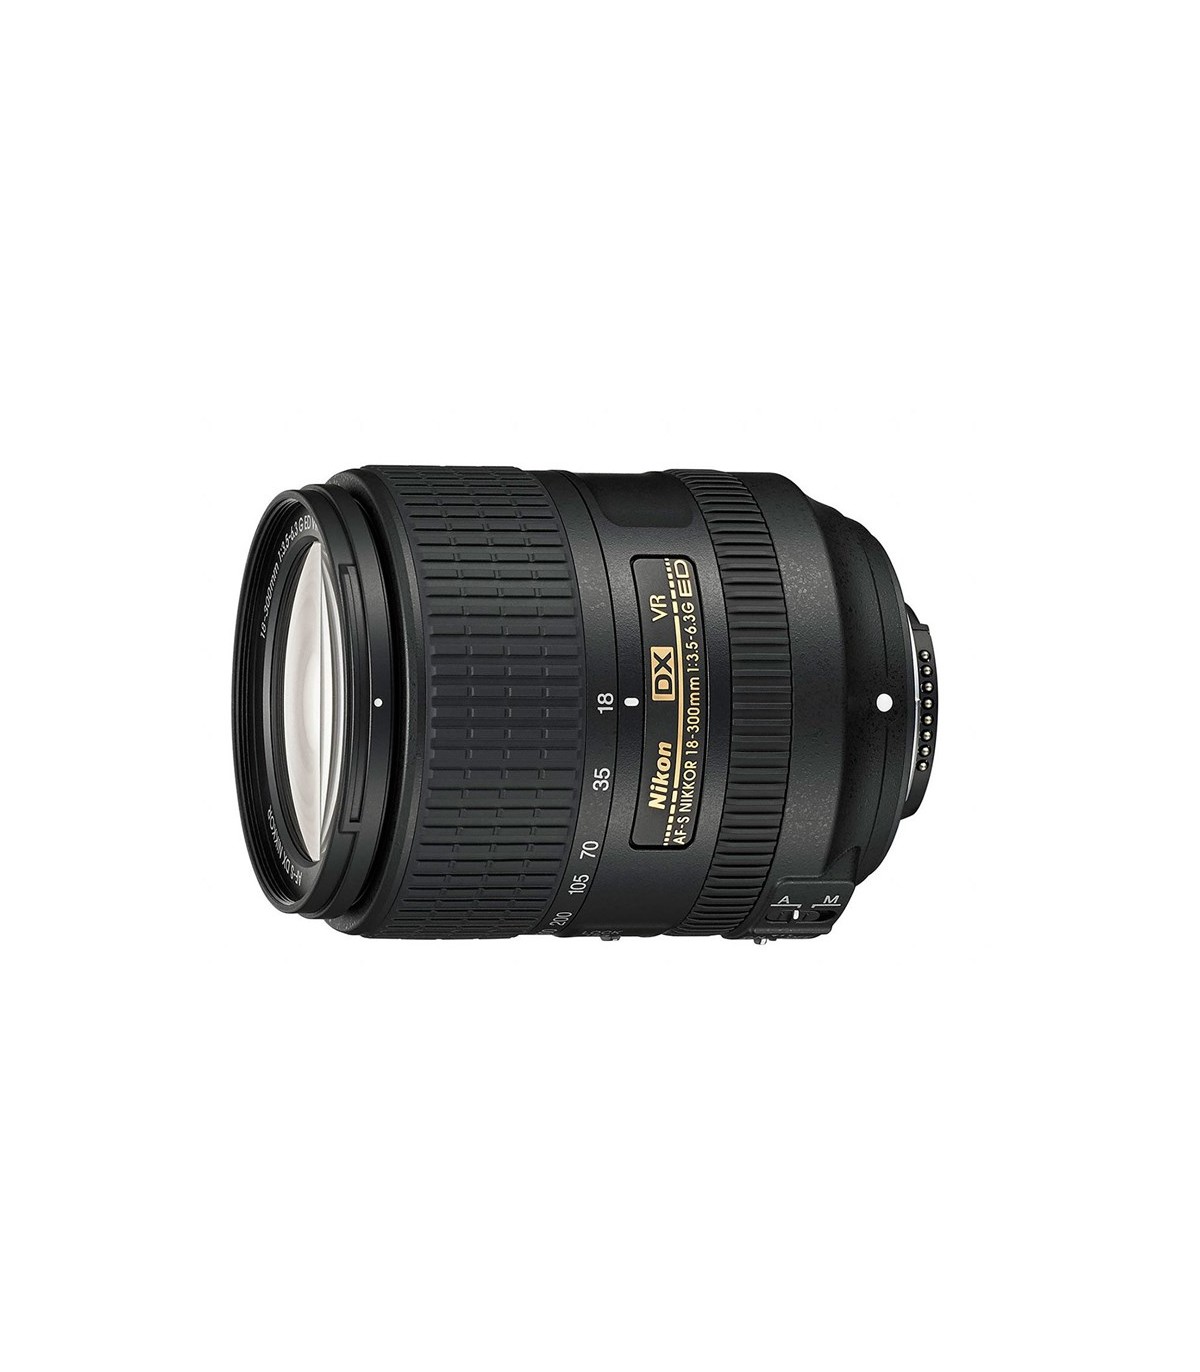 Nikon Lens Af-S Dx Nikkor 18-300mm F/3.5-6.3g Ed Vr עדשה ניקון ...